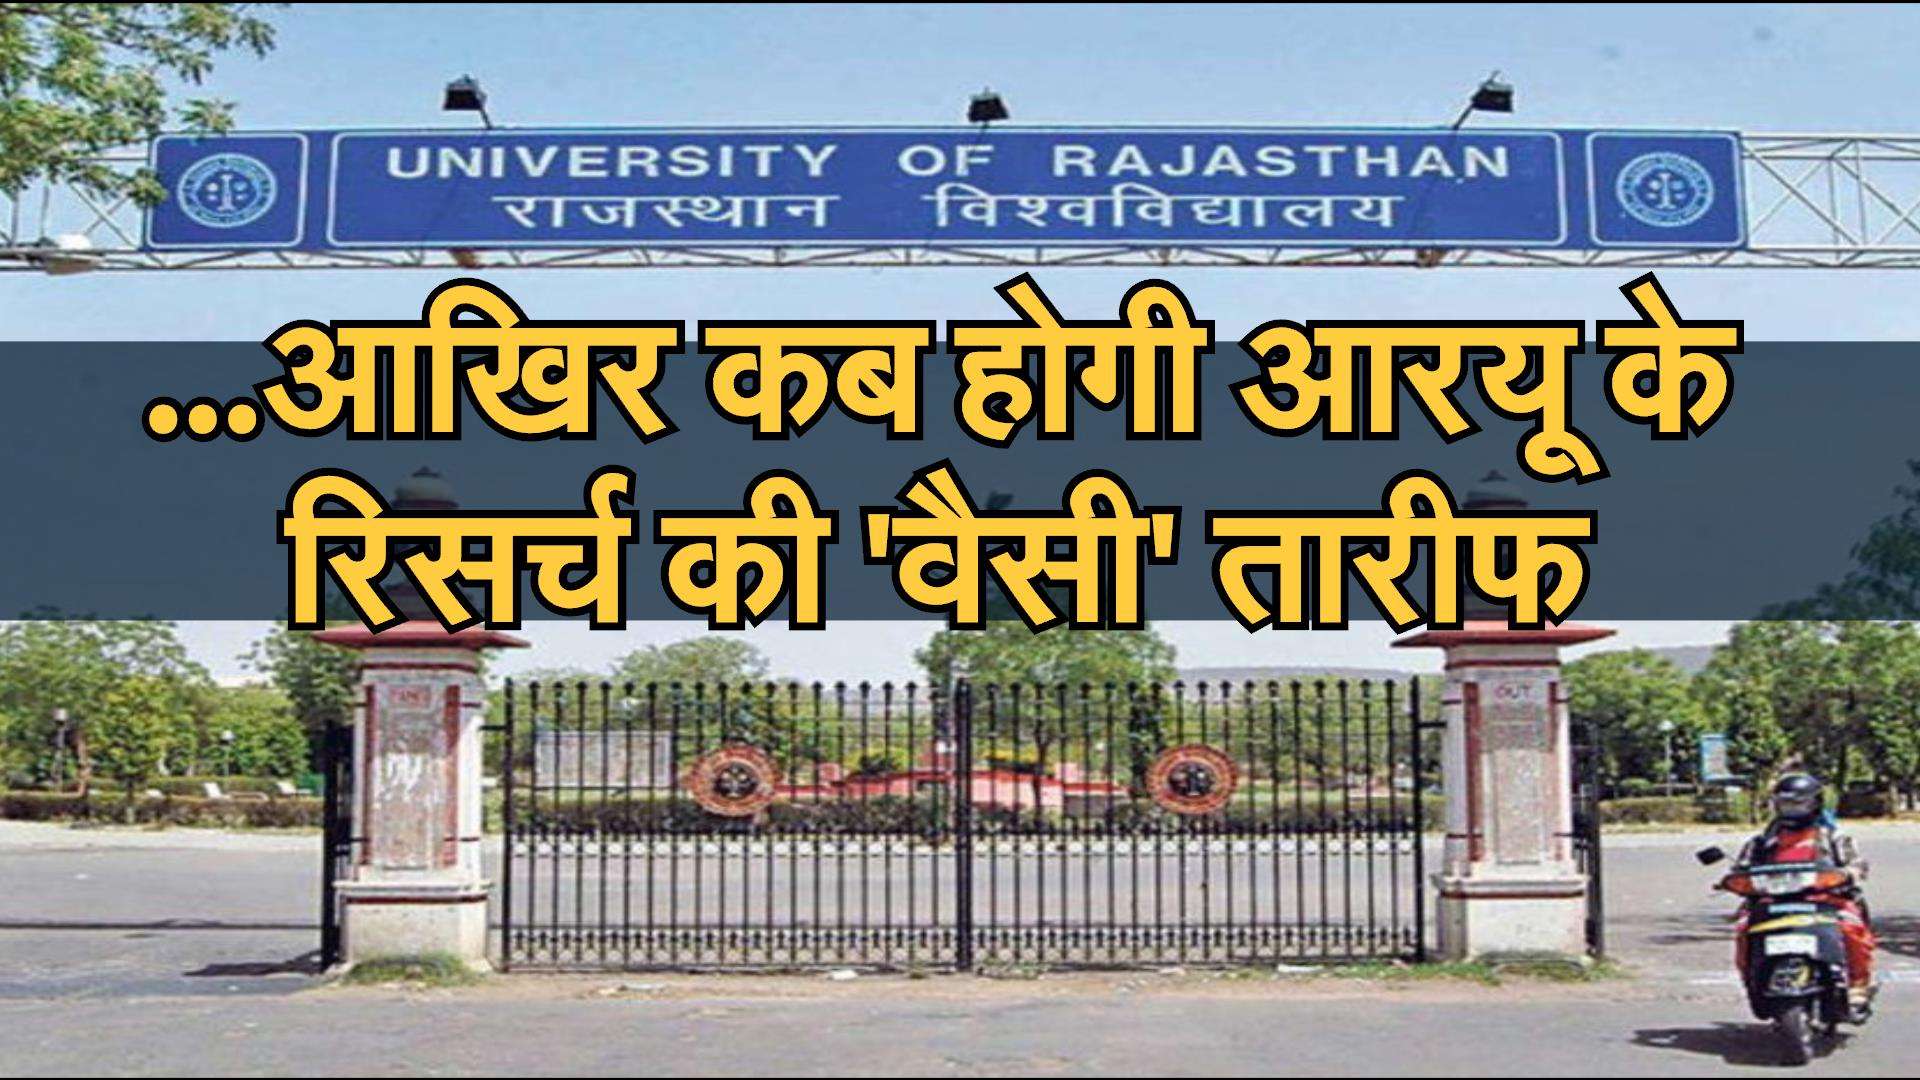 Rajasthan University : एमपेट में गड़बड़ी का आरोप, तीन दिन से चल रहा प्रदर्शन